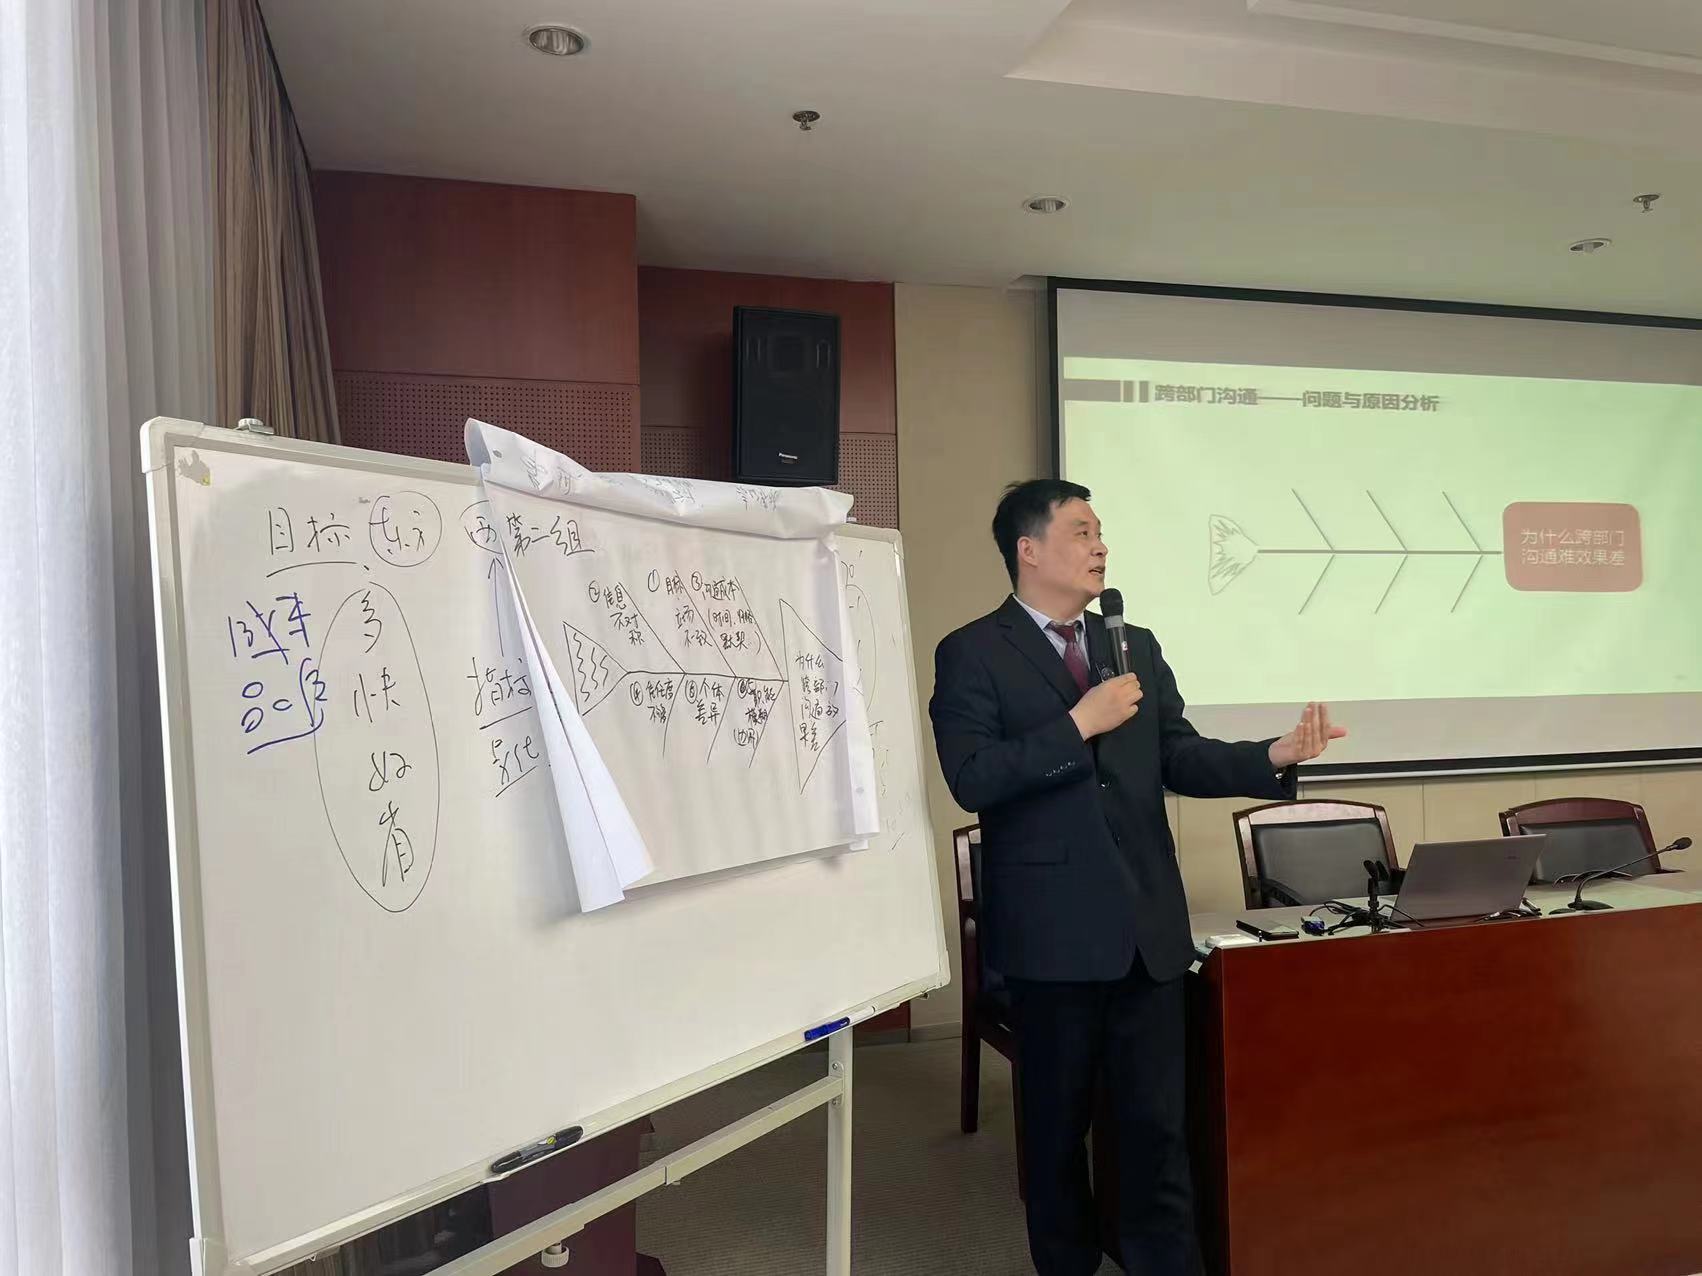 张雷老师2022-05-14为某省电力设计公司30余位中层管理人员进行了《管理者高效沟通工具》的授课